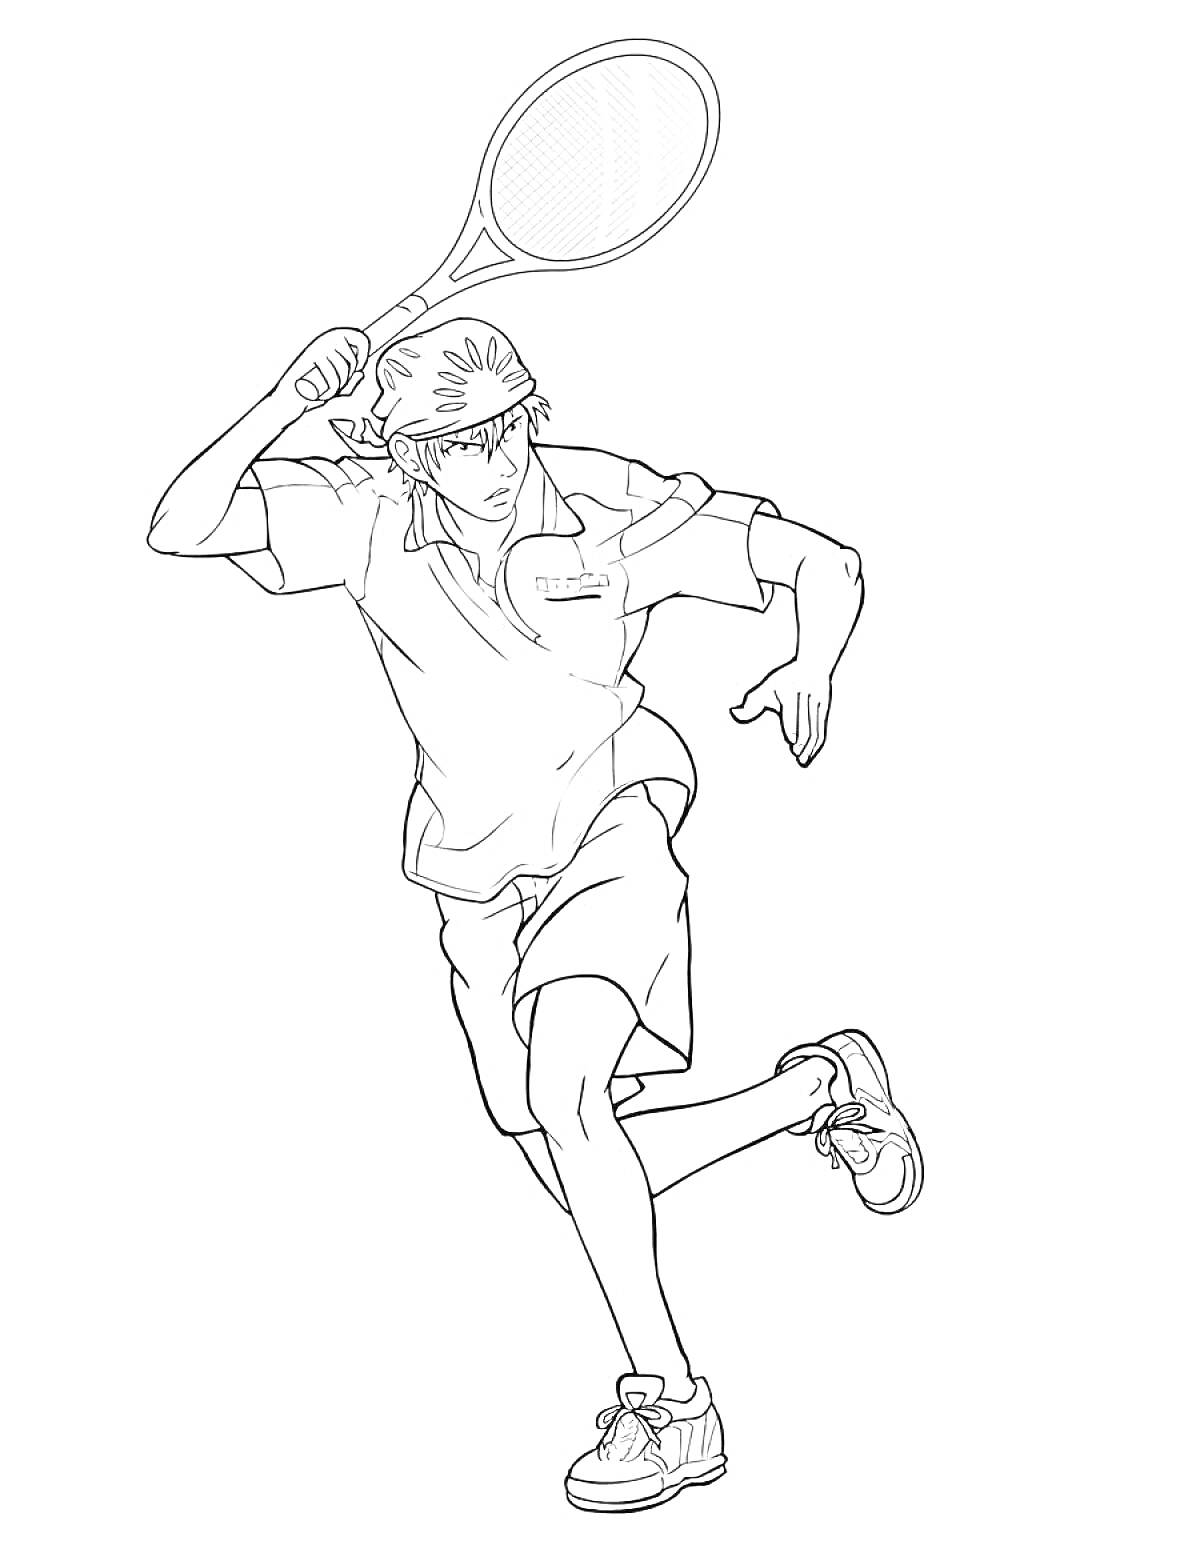 Раскраска Теннисист в бейсболке с ракеткой в замахе для удара по мячу